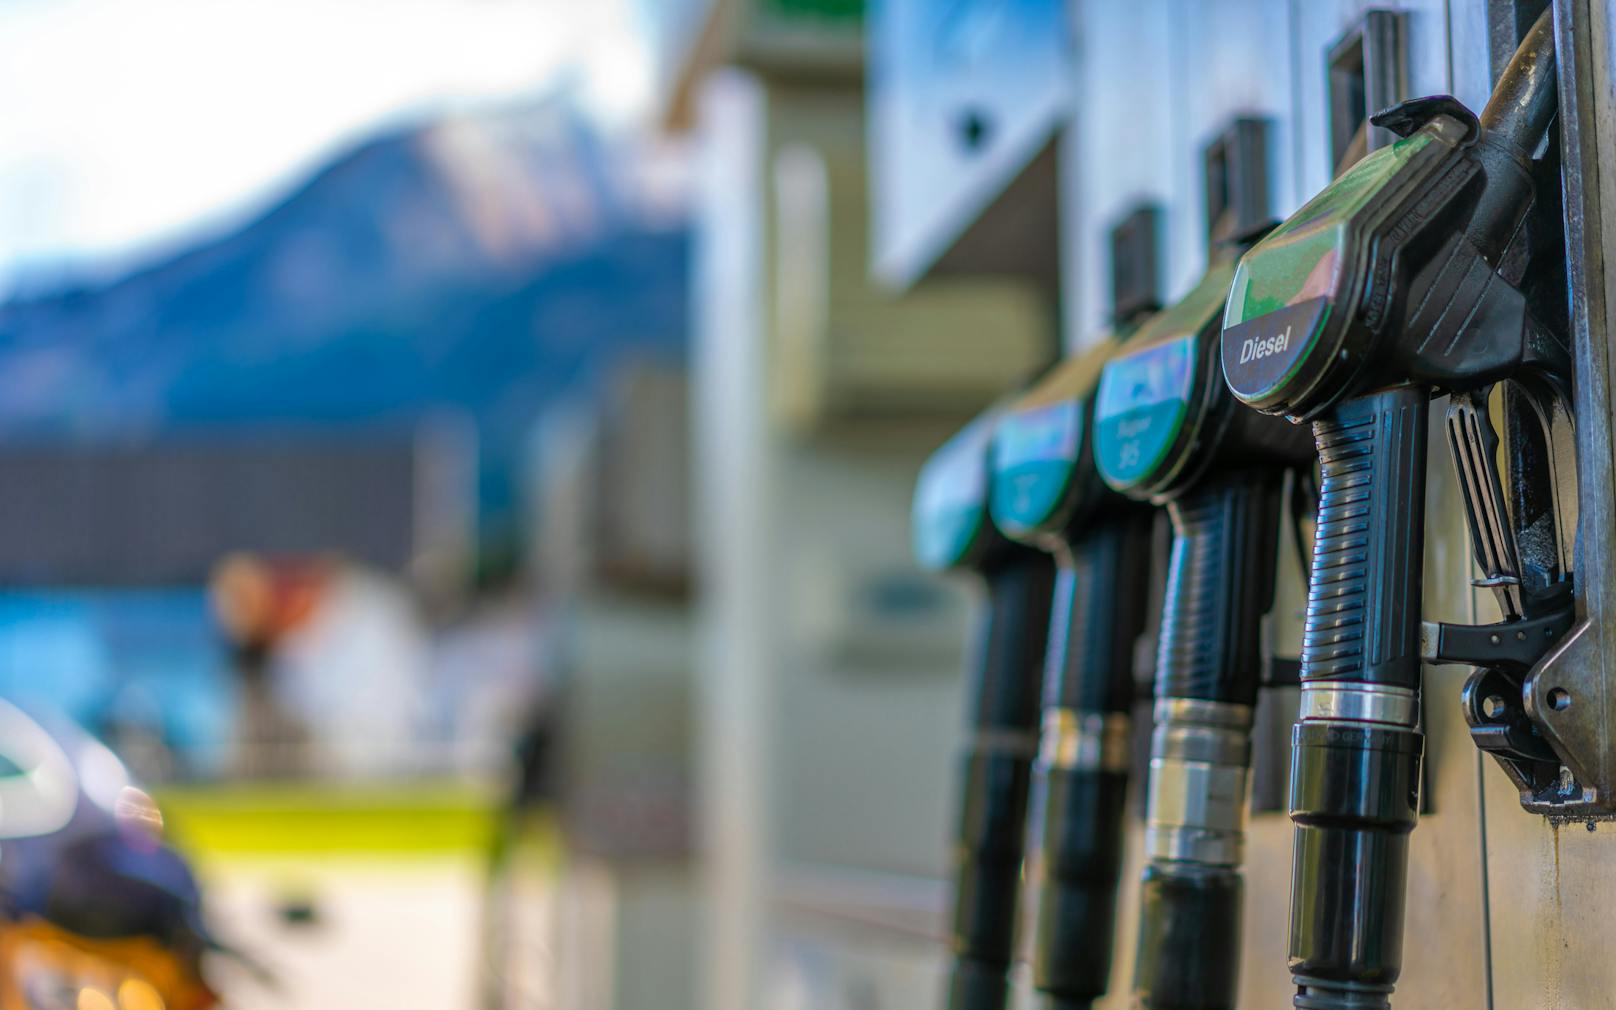 Ölstreit treibt Spritpreis auf 1,60 Euro pro Liter